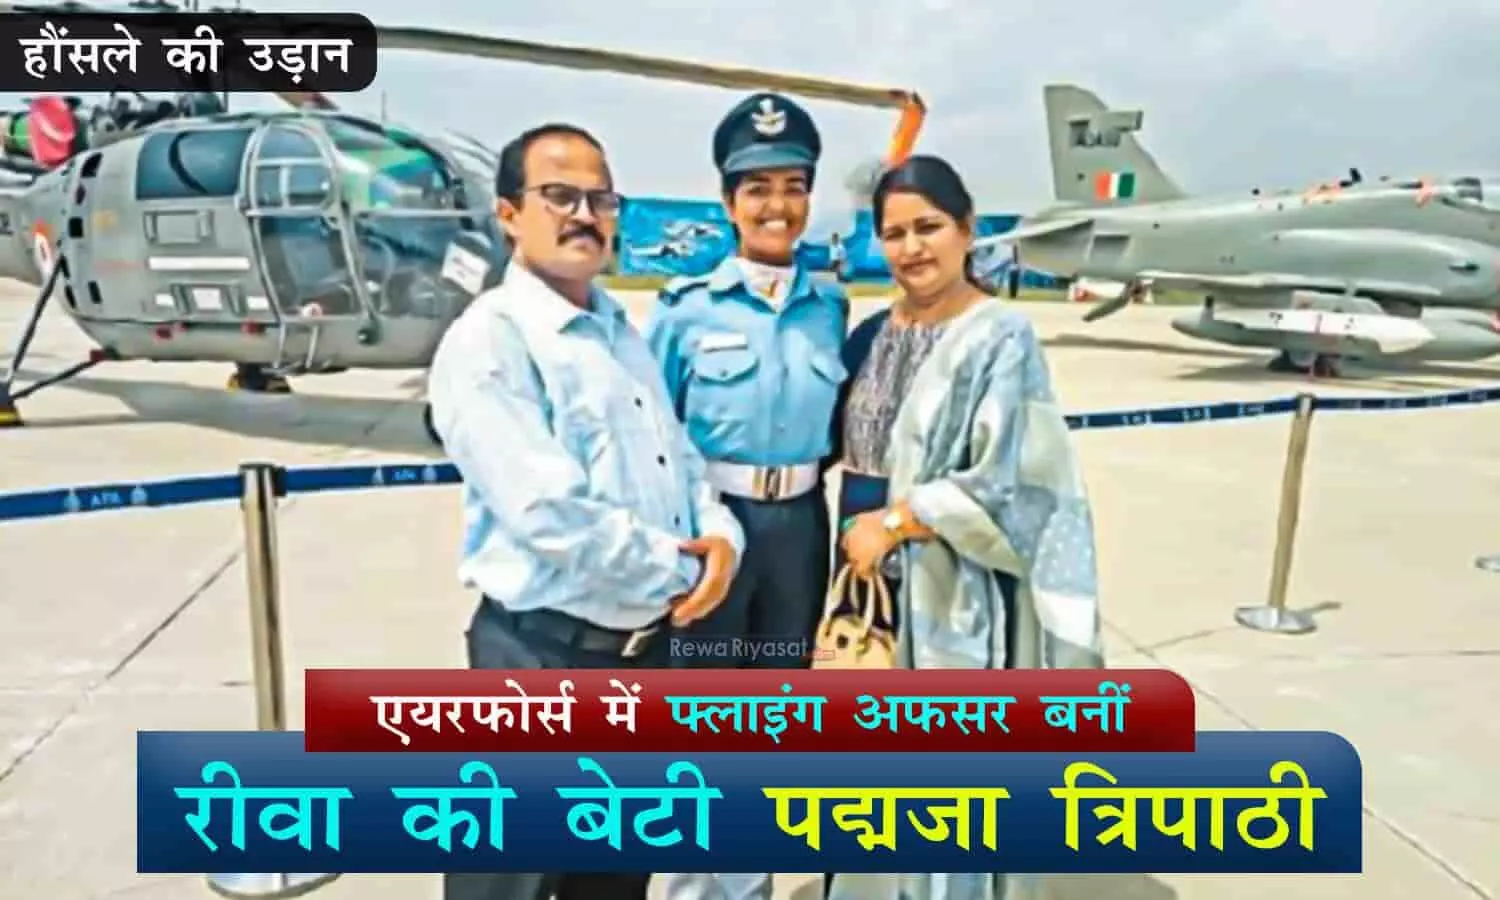 रीवा की पद्मजा त्रिपाठी के हौसले की उड़ान: इंडियन एयरफोर्स में फ्लाइंग ऑफिसर बनीं, विंध्य का मान बढ़ाया